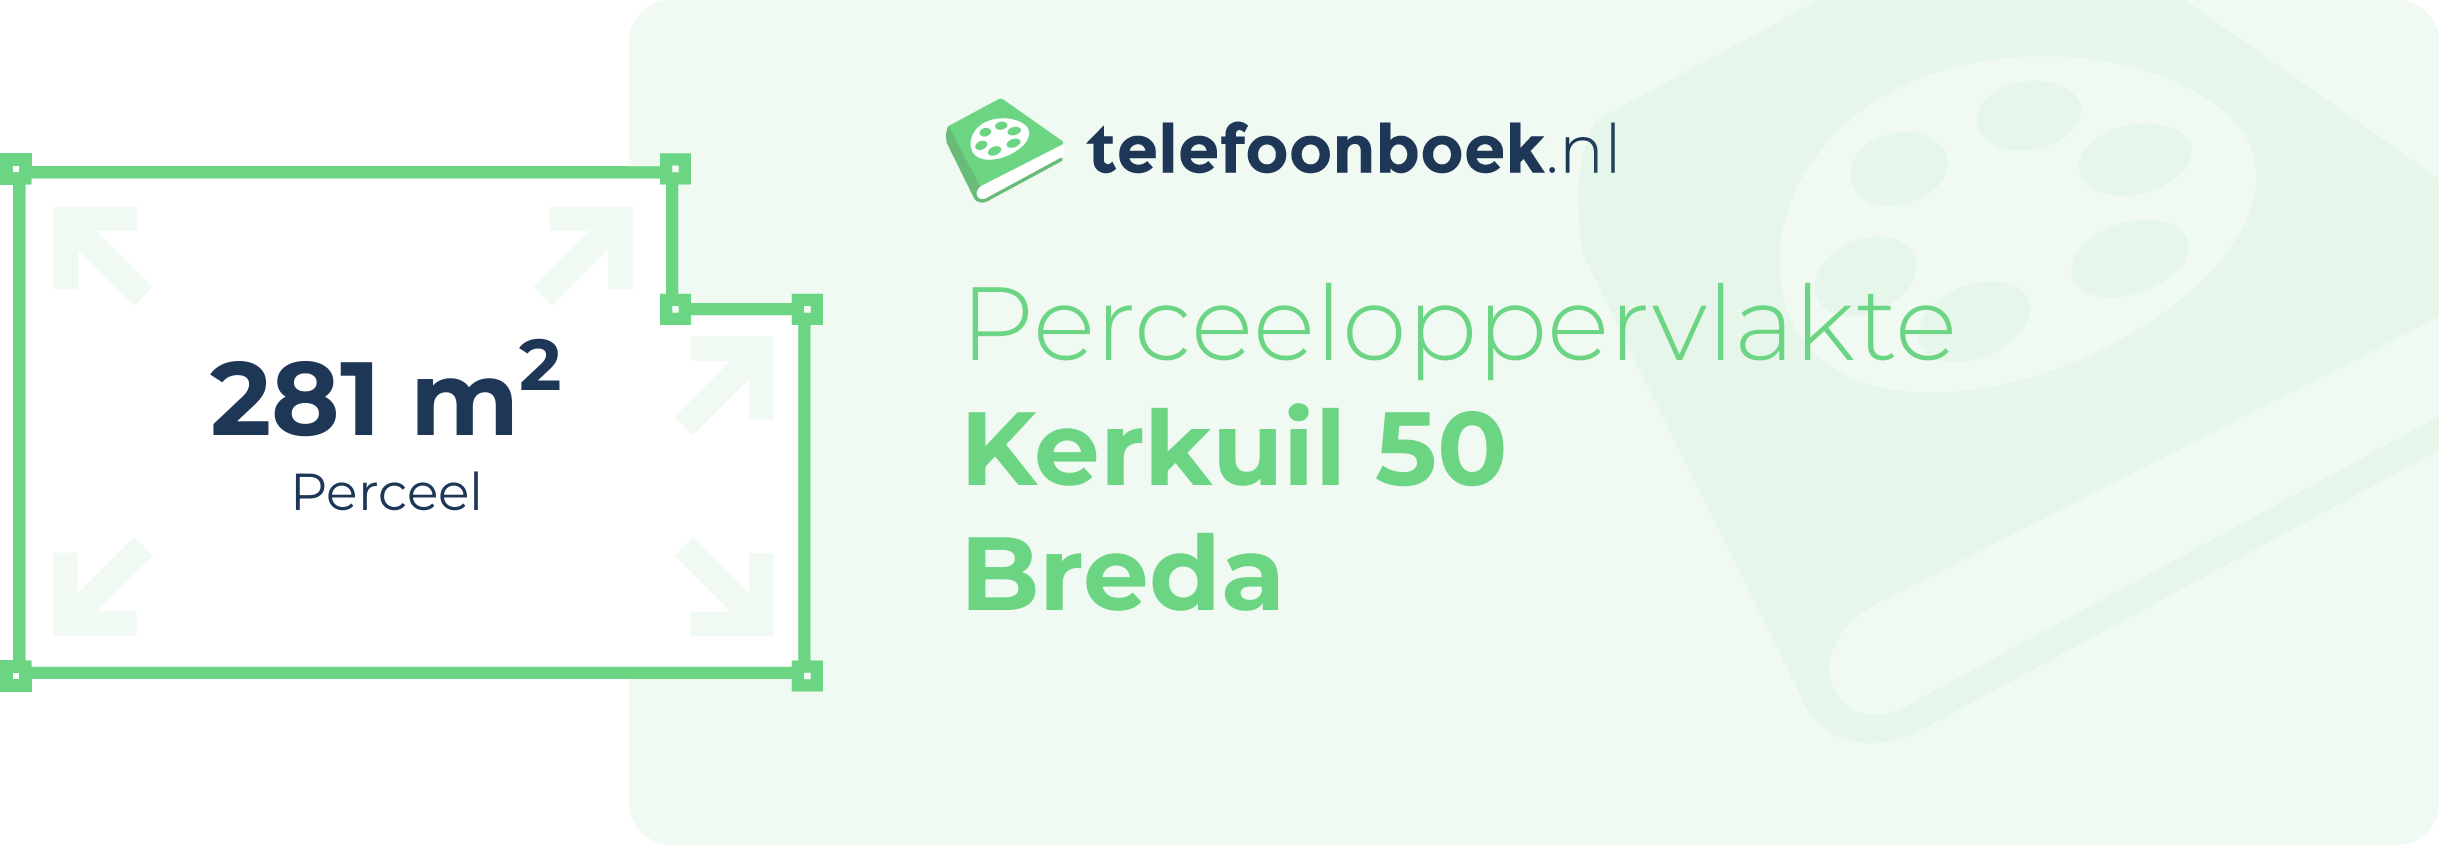 Perceeloppervlakte Kerkuil 50 Breda